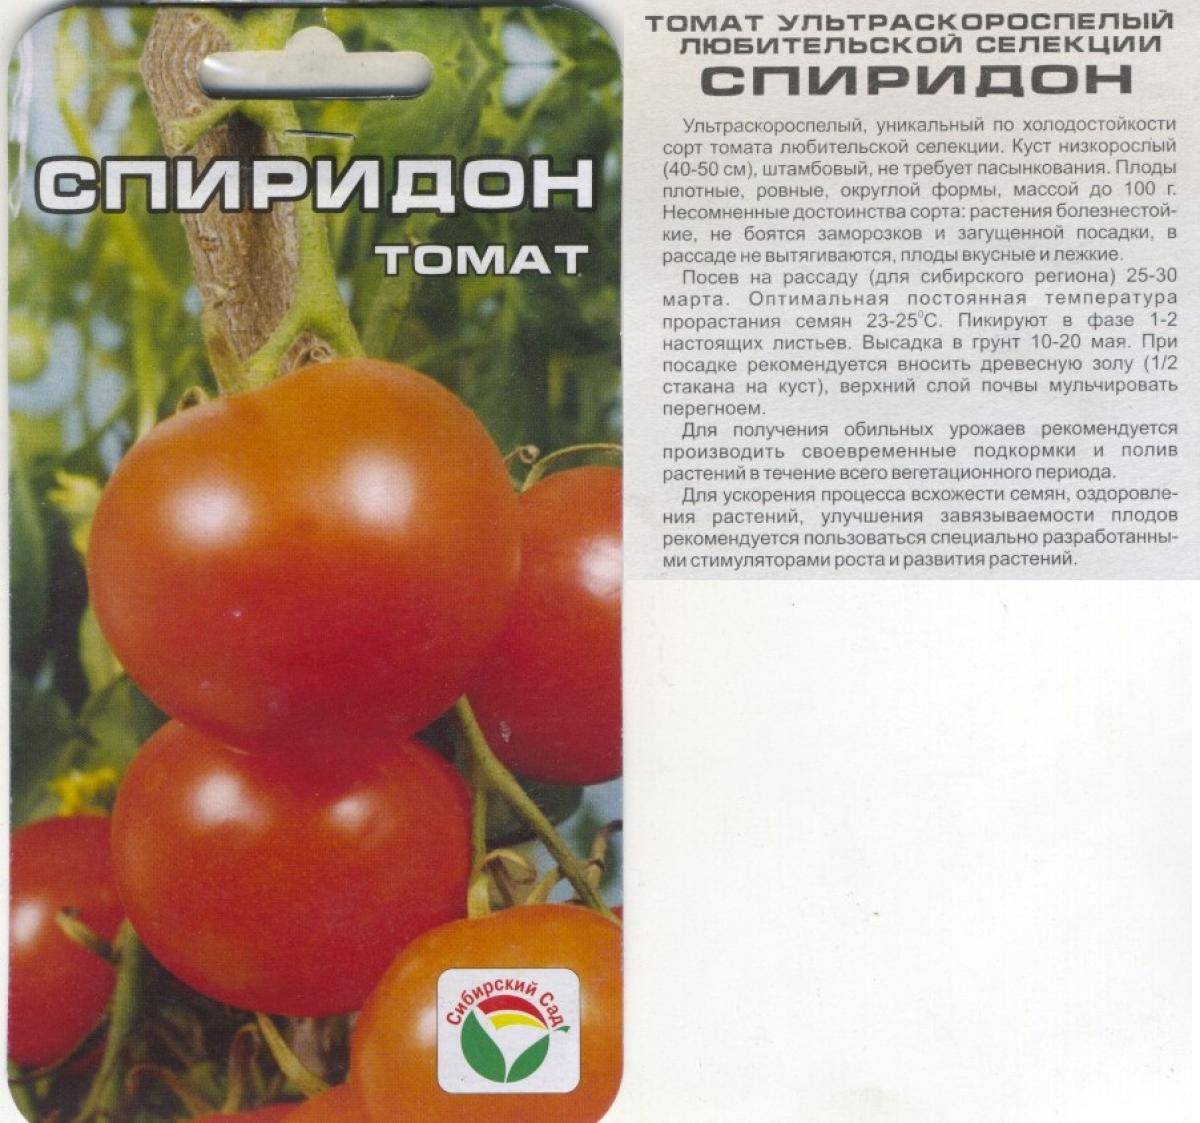 Описание томата серебристая ель, характеристика сорта, выращивание